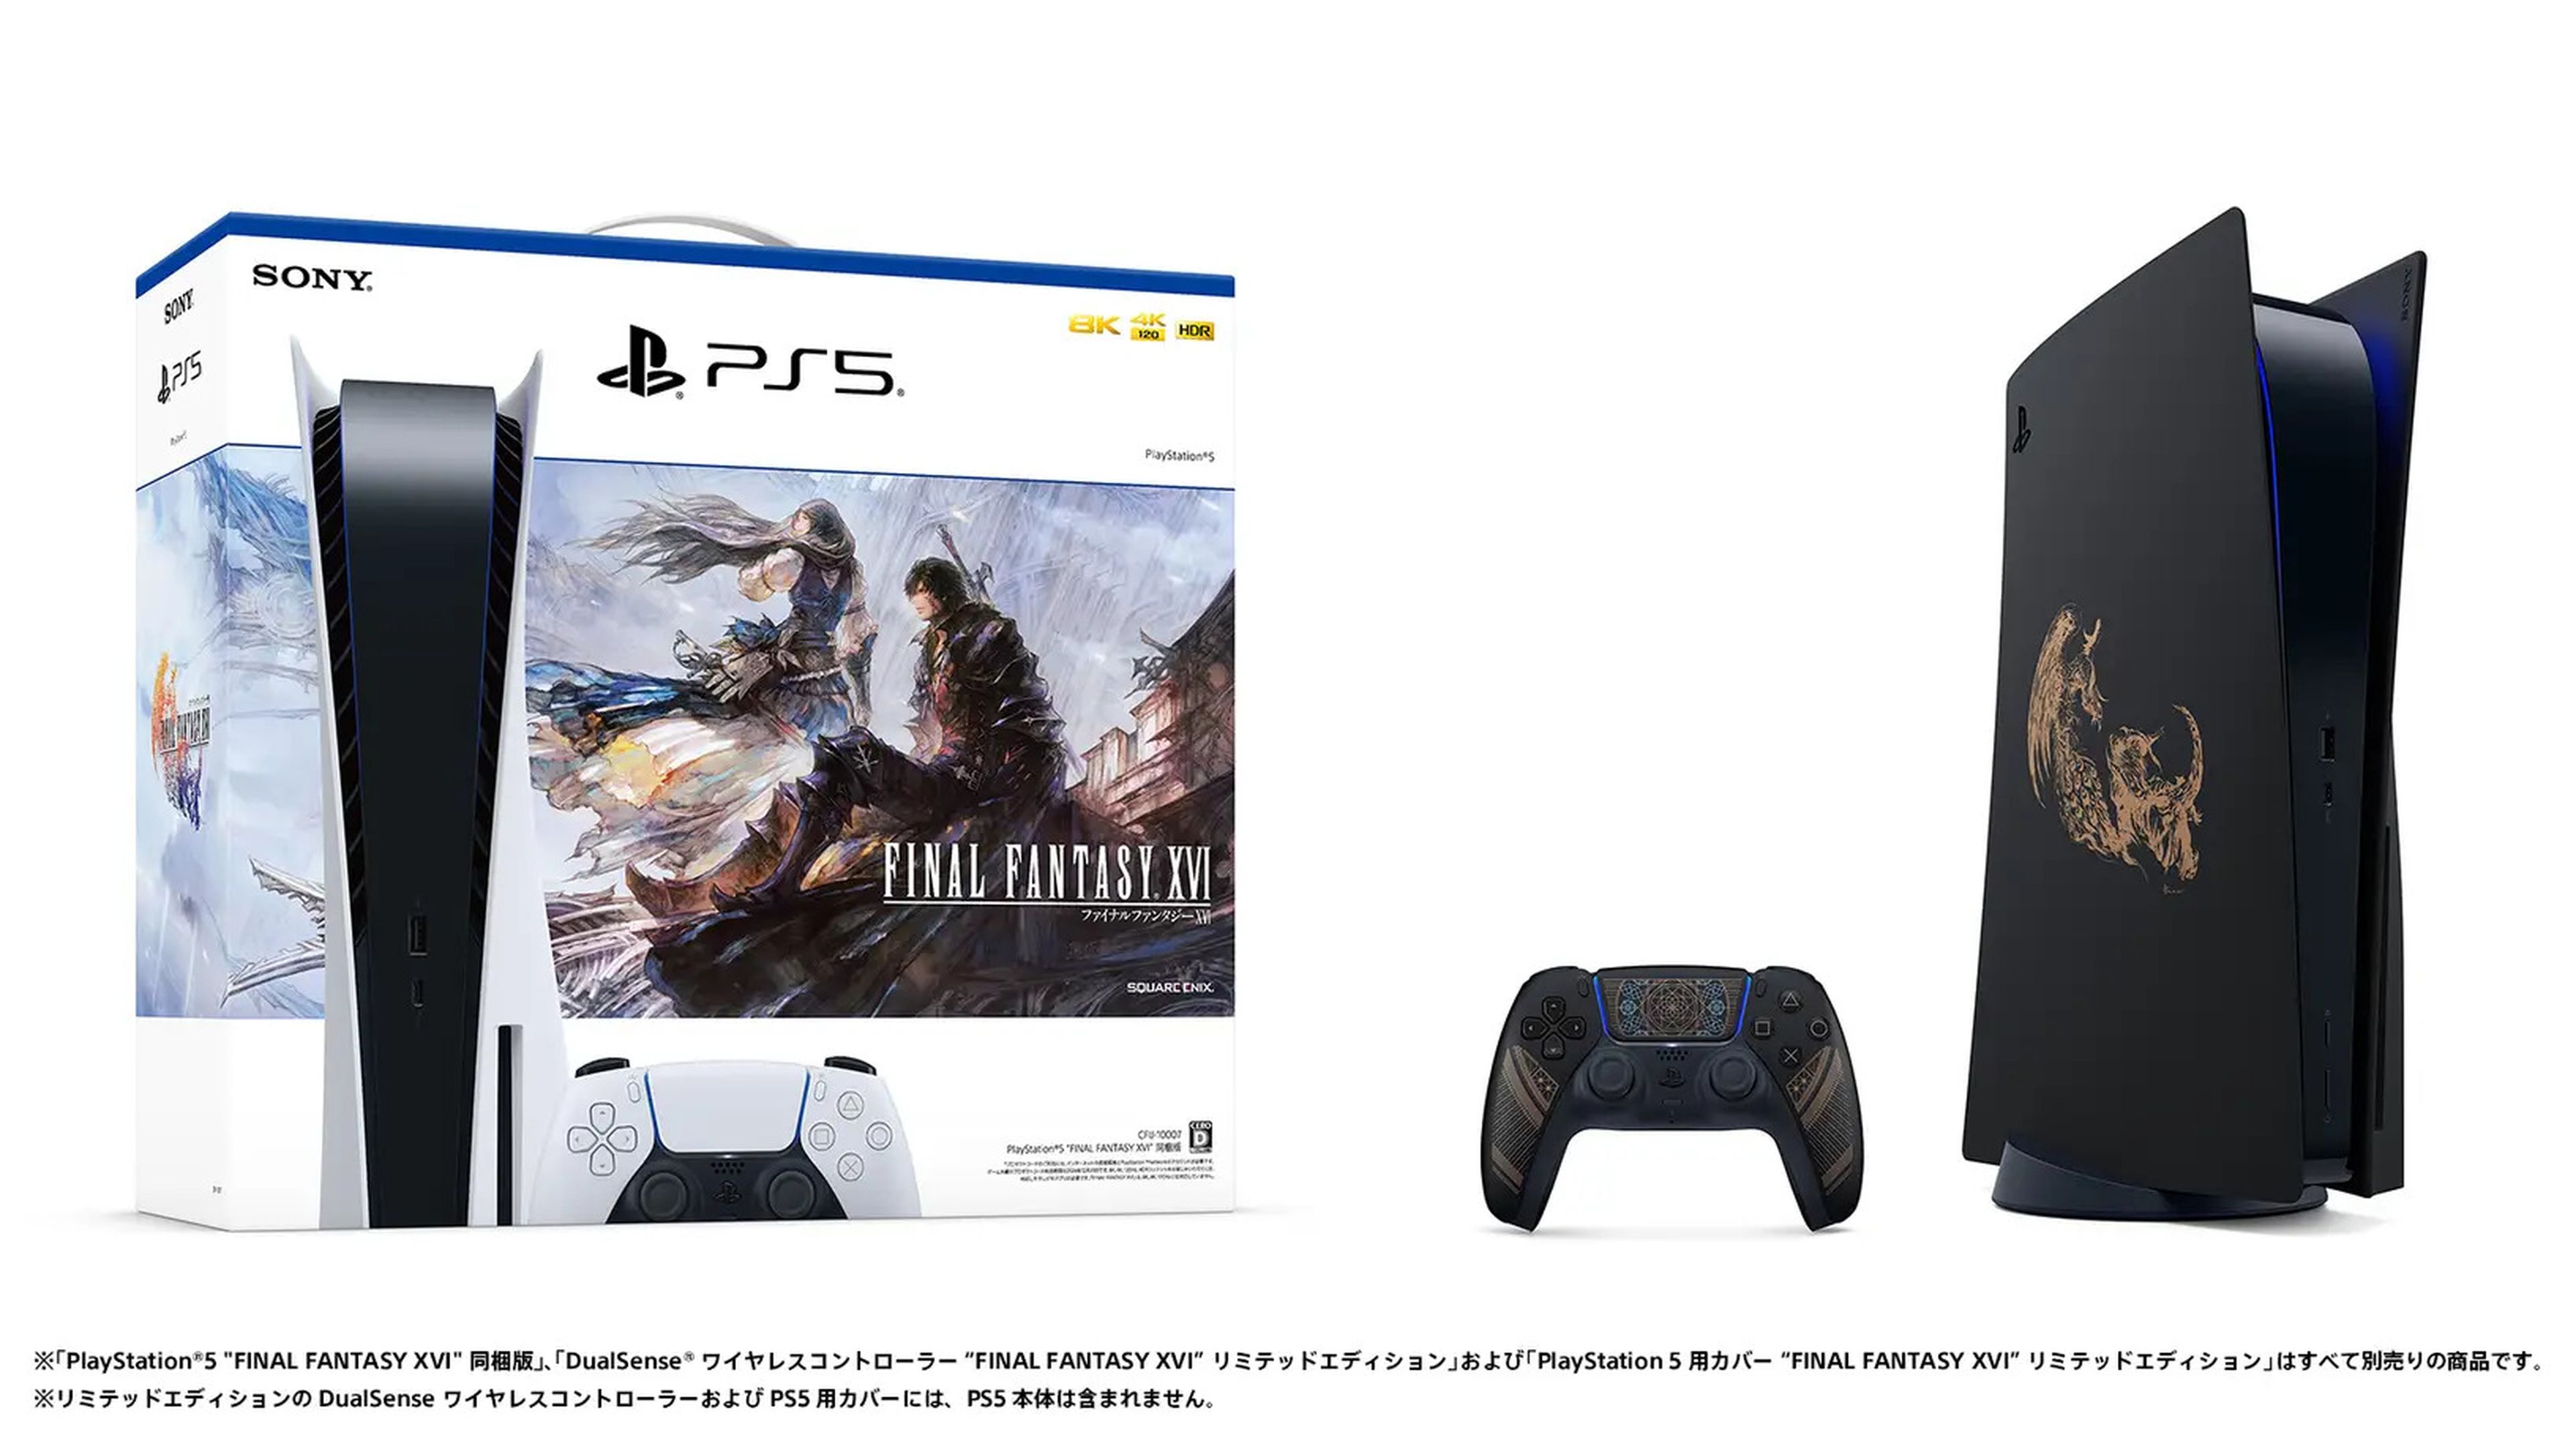 Pack PS5 con Final Fantasy XVI, DualSense y carcasas intercambiables